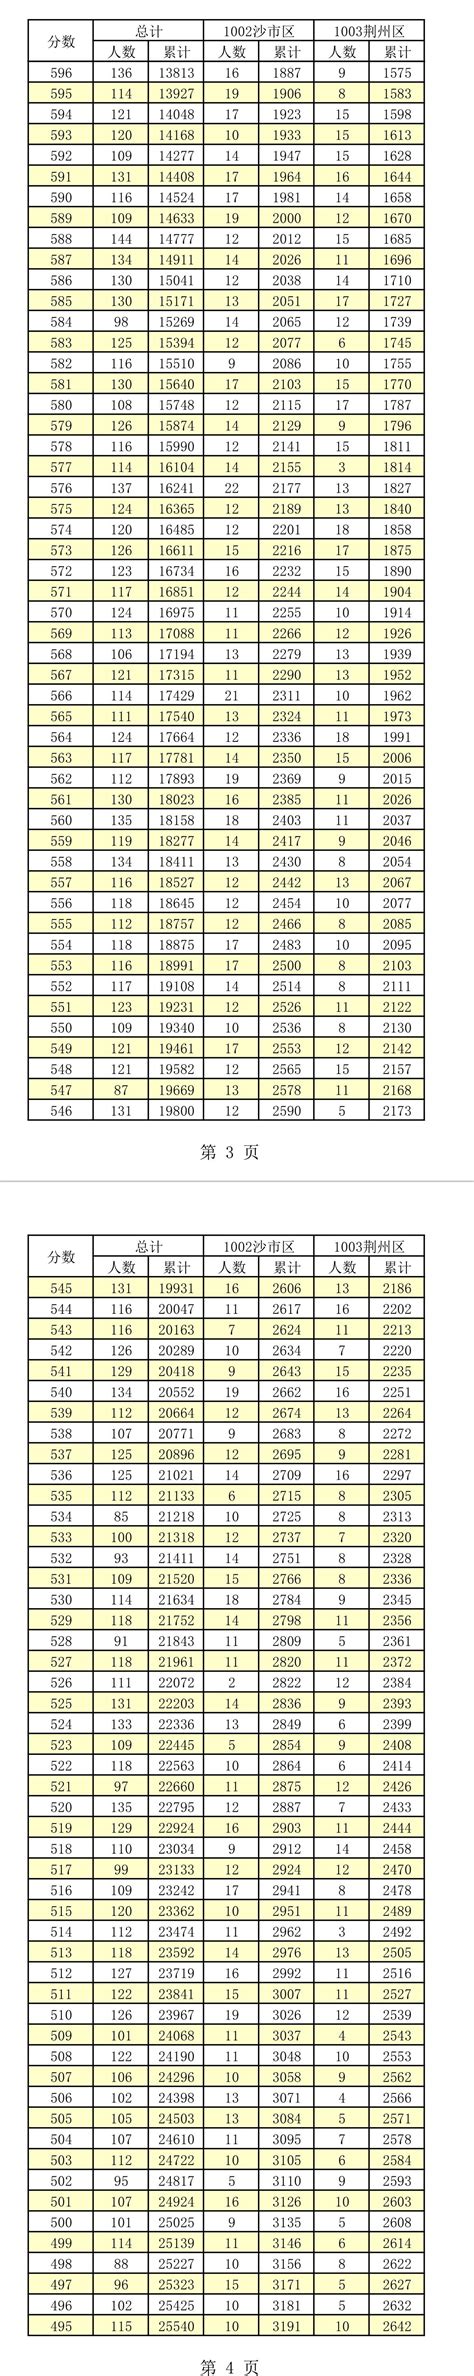 2021济南中考一分一段表 中考成绩排名_初三网